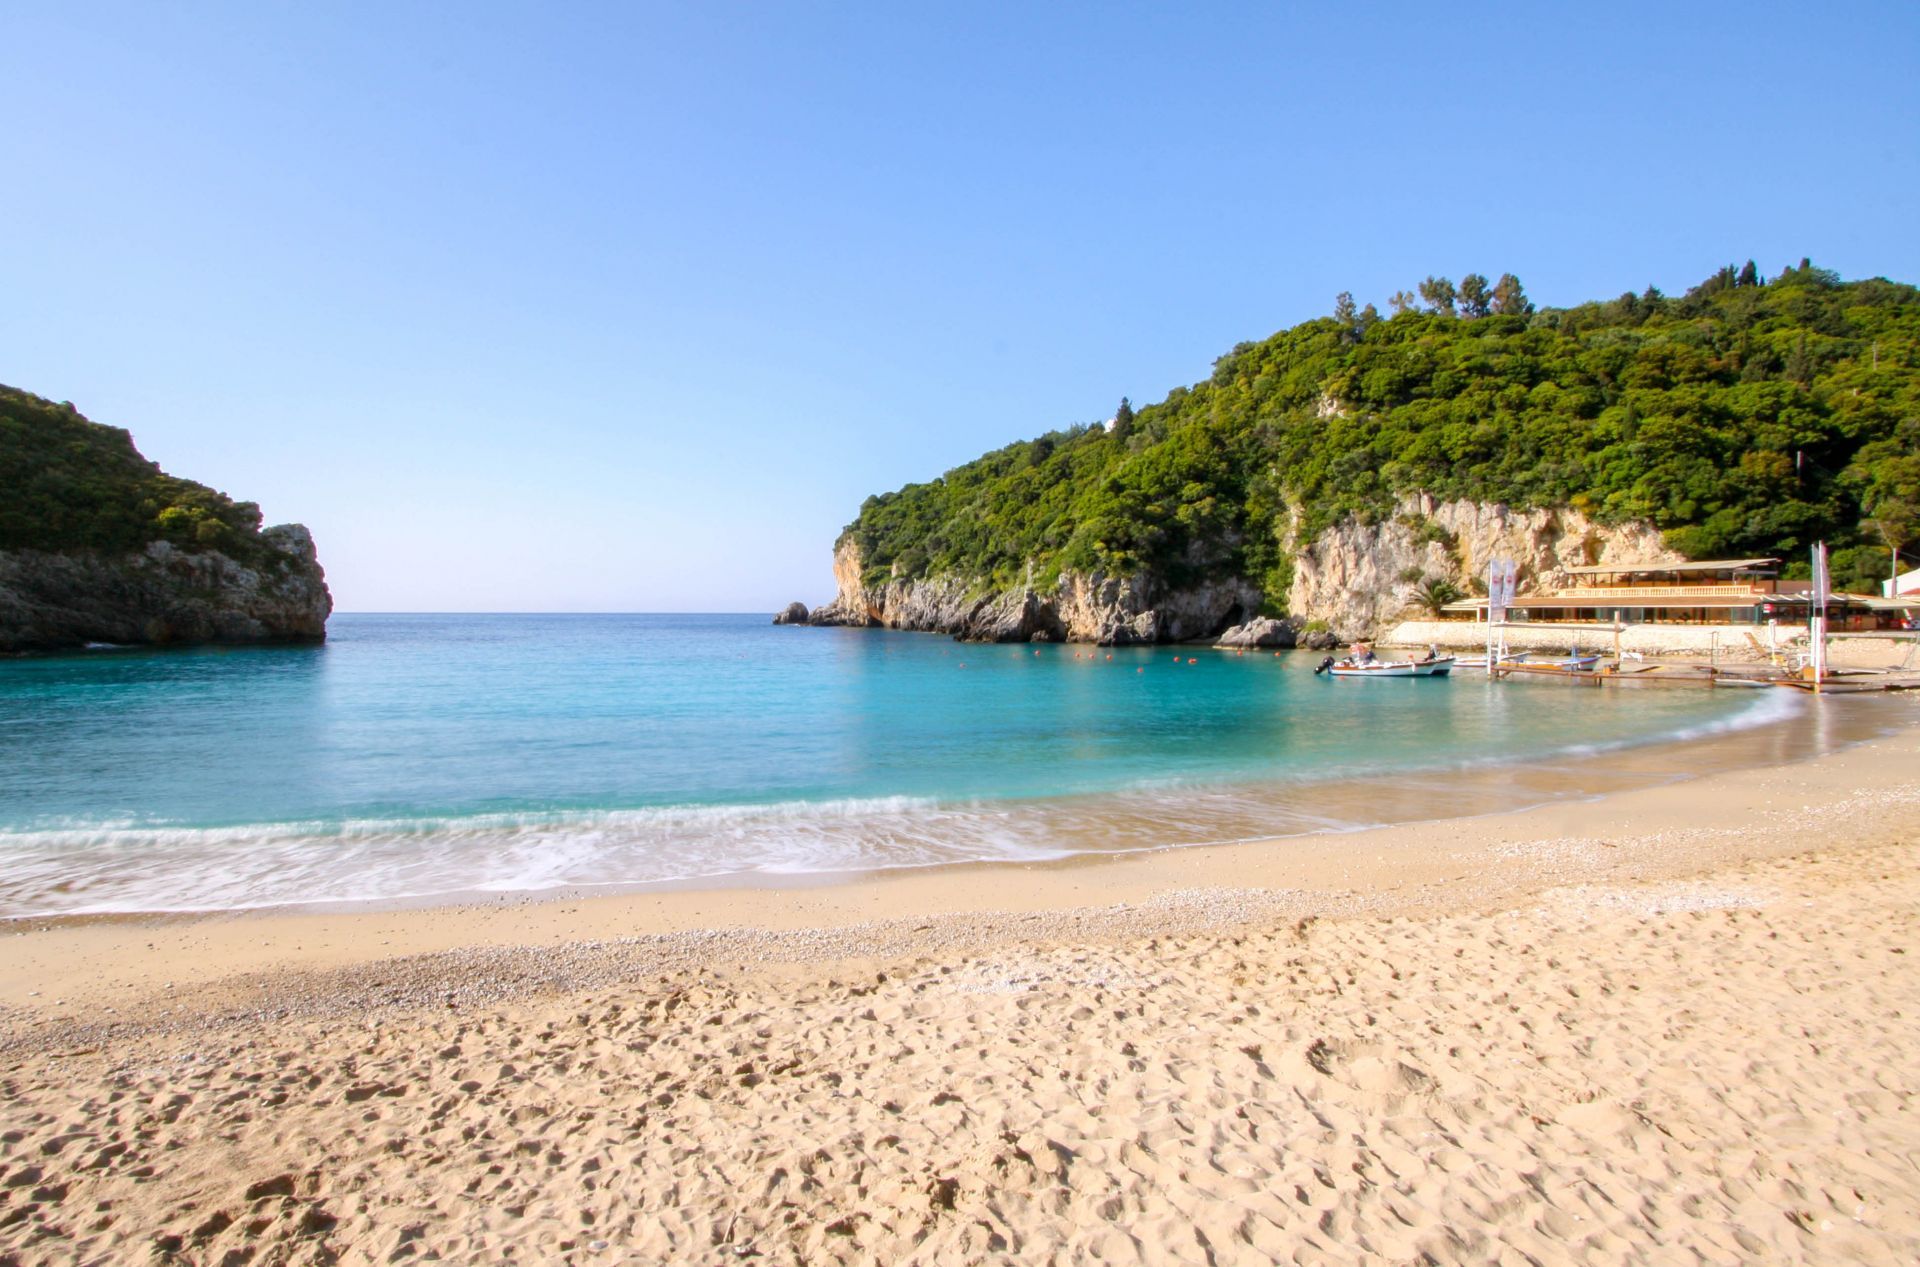 Corfu island: The beautiful Paleokastritsa beach